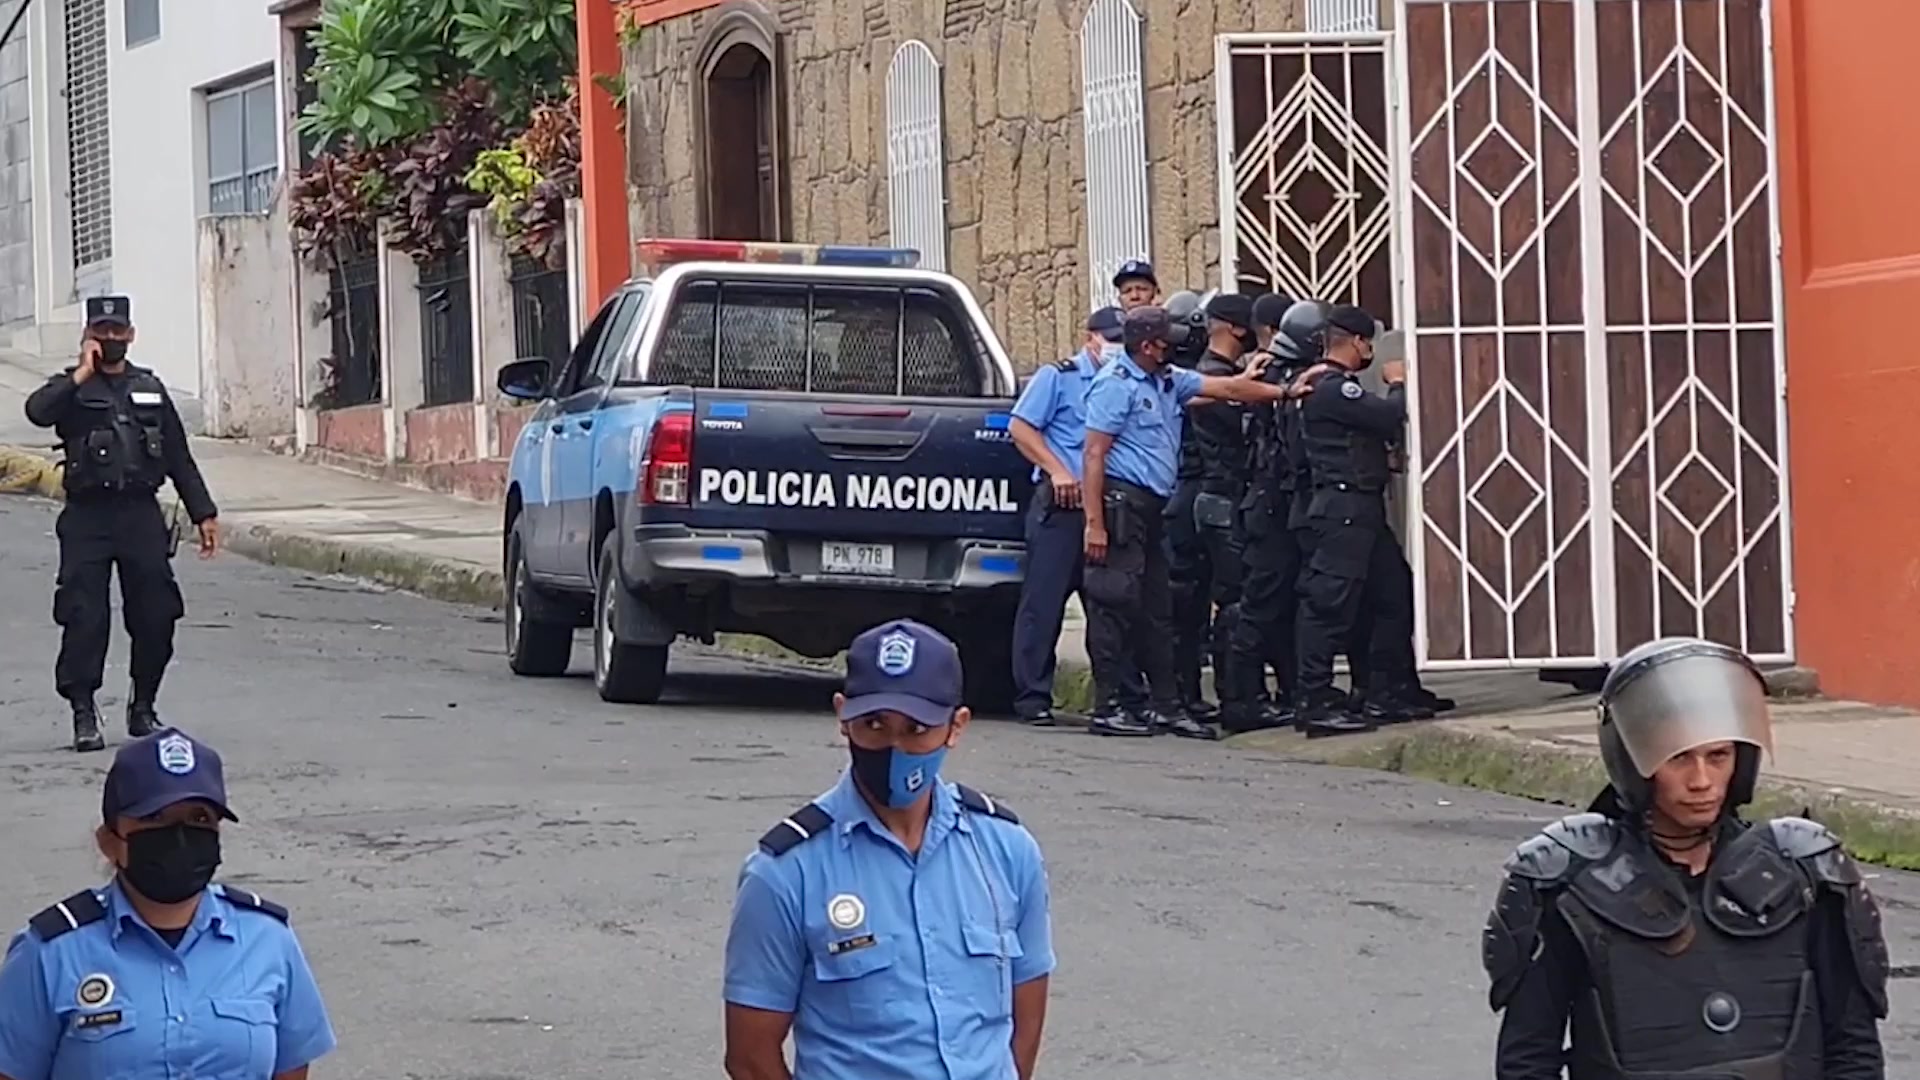 El régimen de Daniel Ortega retiene a otro sacerdote y se profundiza la persecución contra la Iglesia católica en Nicaragua